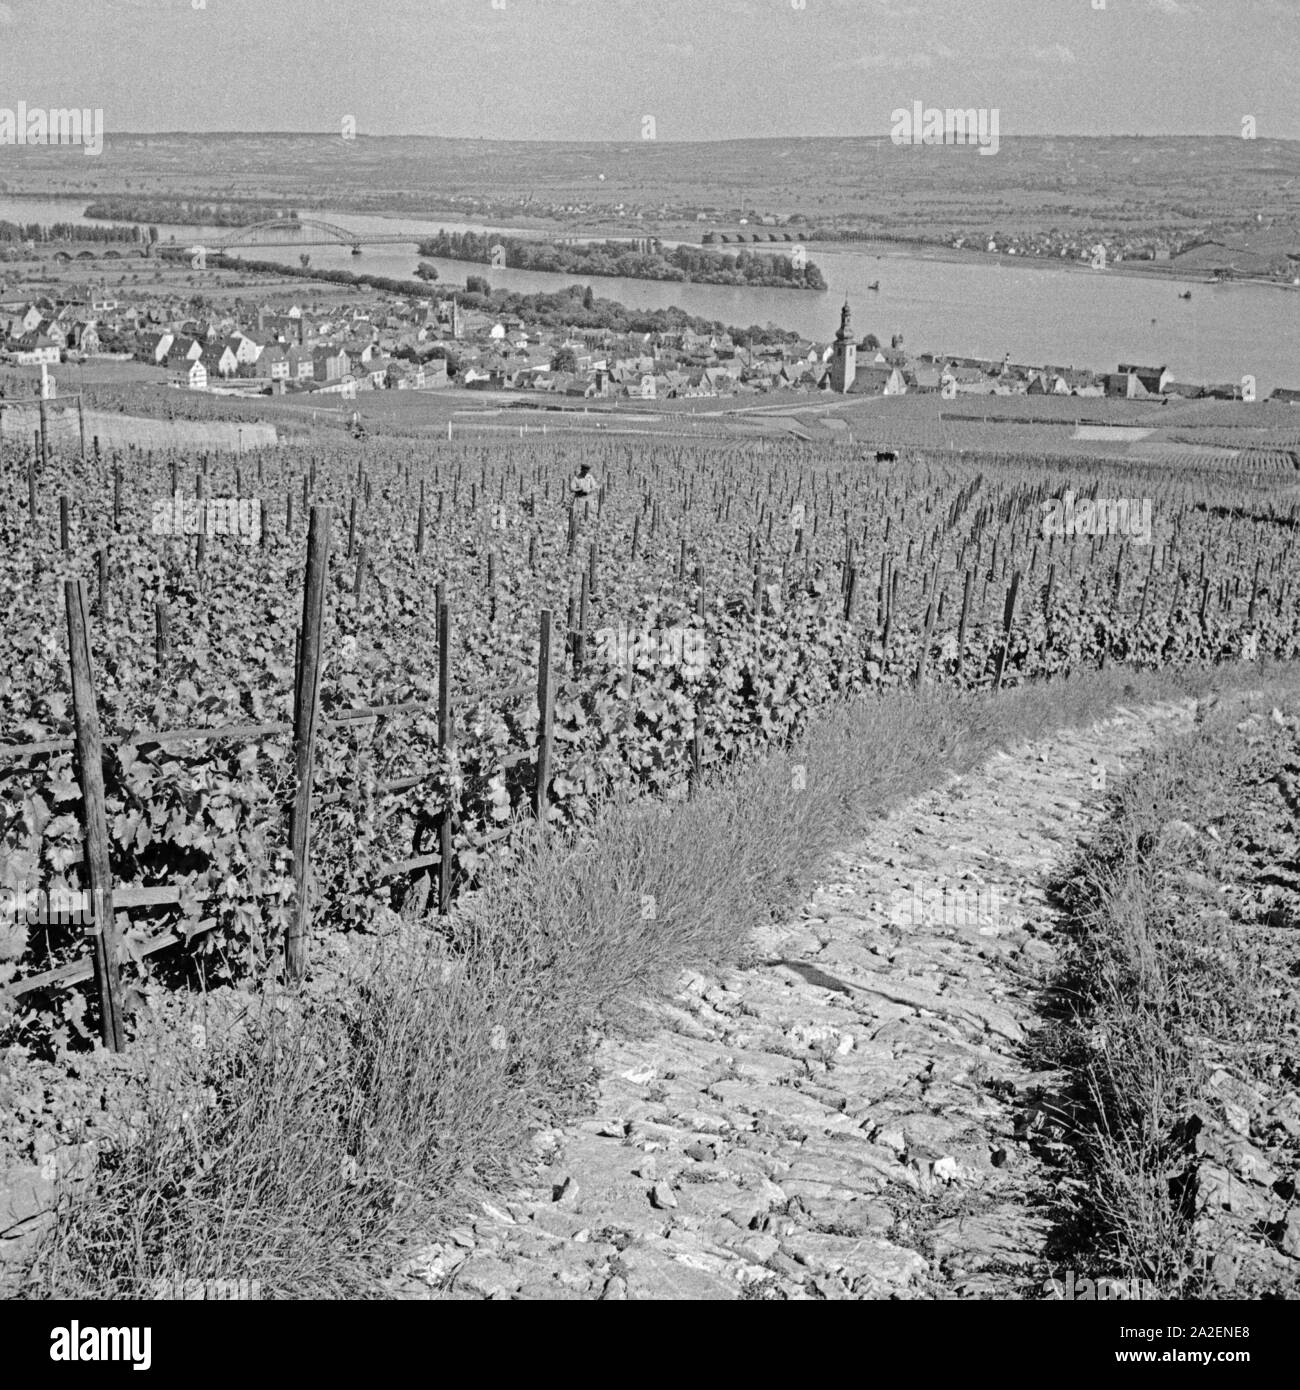 Blick über die Weinberge zur Stadt Rüdesheim am Rhein, Deutschland 1930er Jahre. View over vineyards to the city of Ruedesheim at river Rhine, Germany 1930s. Stock Photo